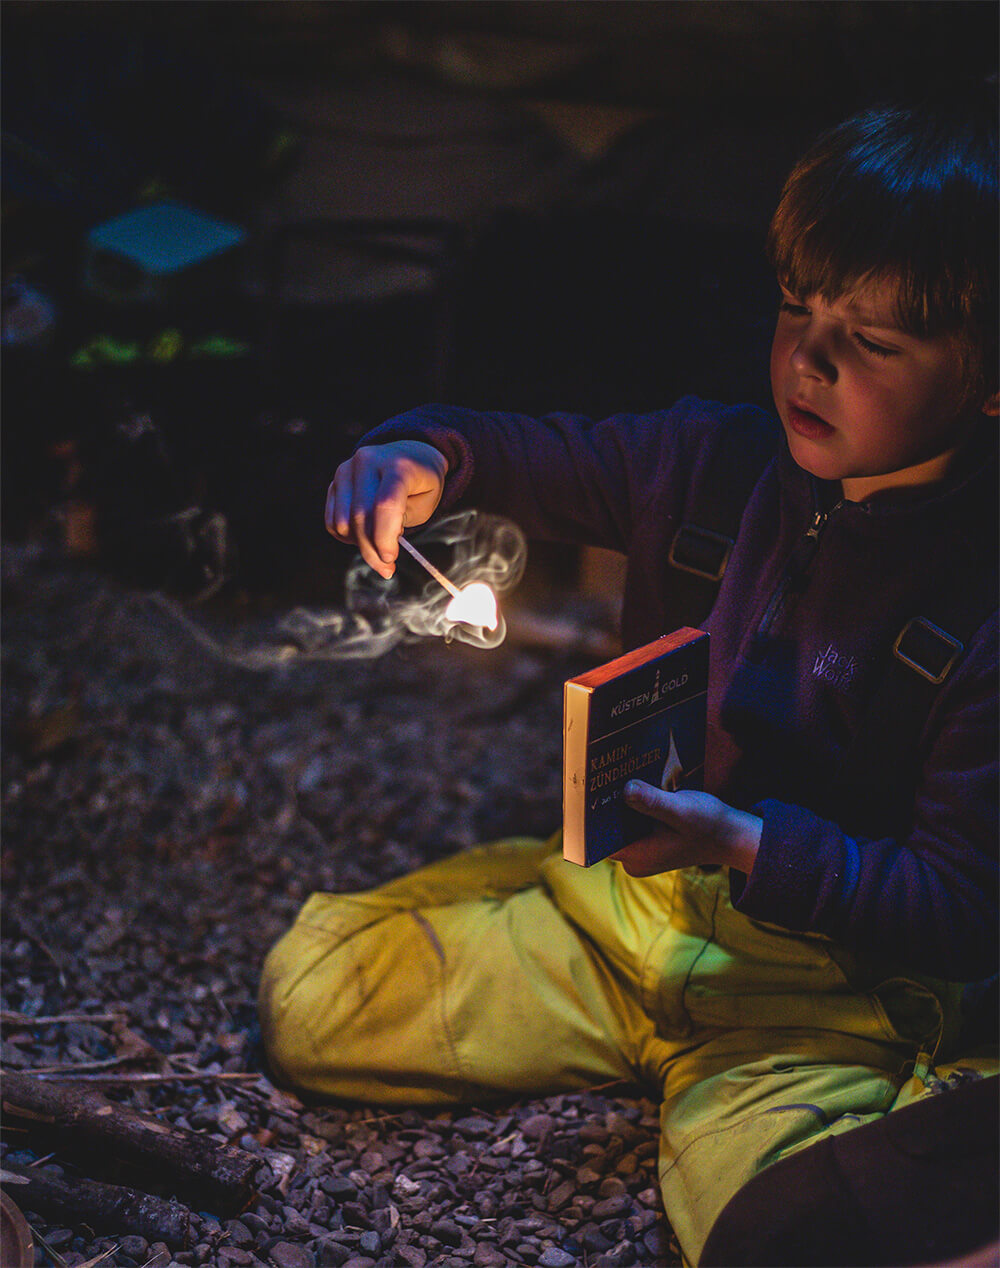 Kind entzündet Feuer im Waldkindergarten